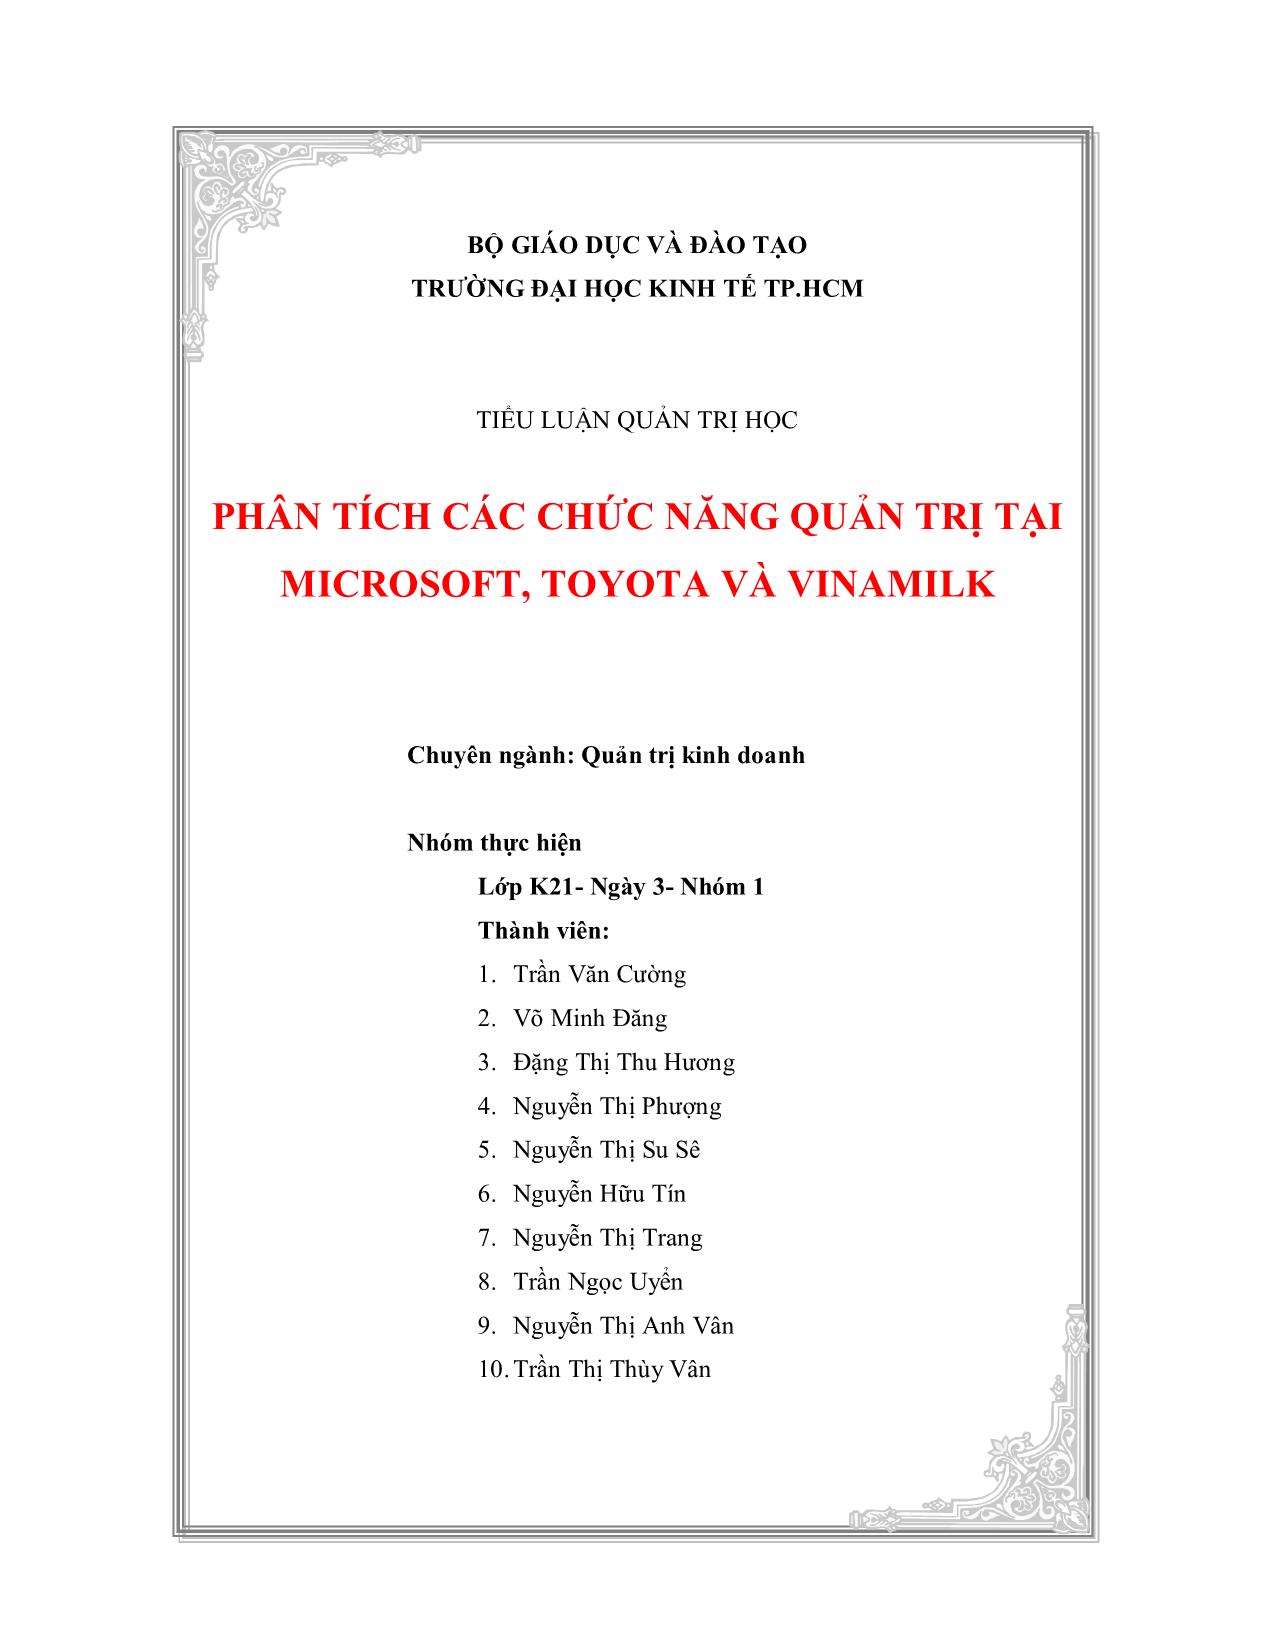 Tiểu luận Phân tích các chức năng quản trị tại Microsoft, Toyota và Vinamilk trang 1